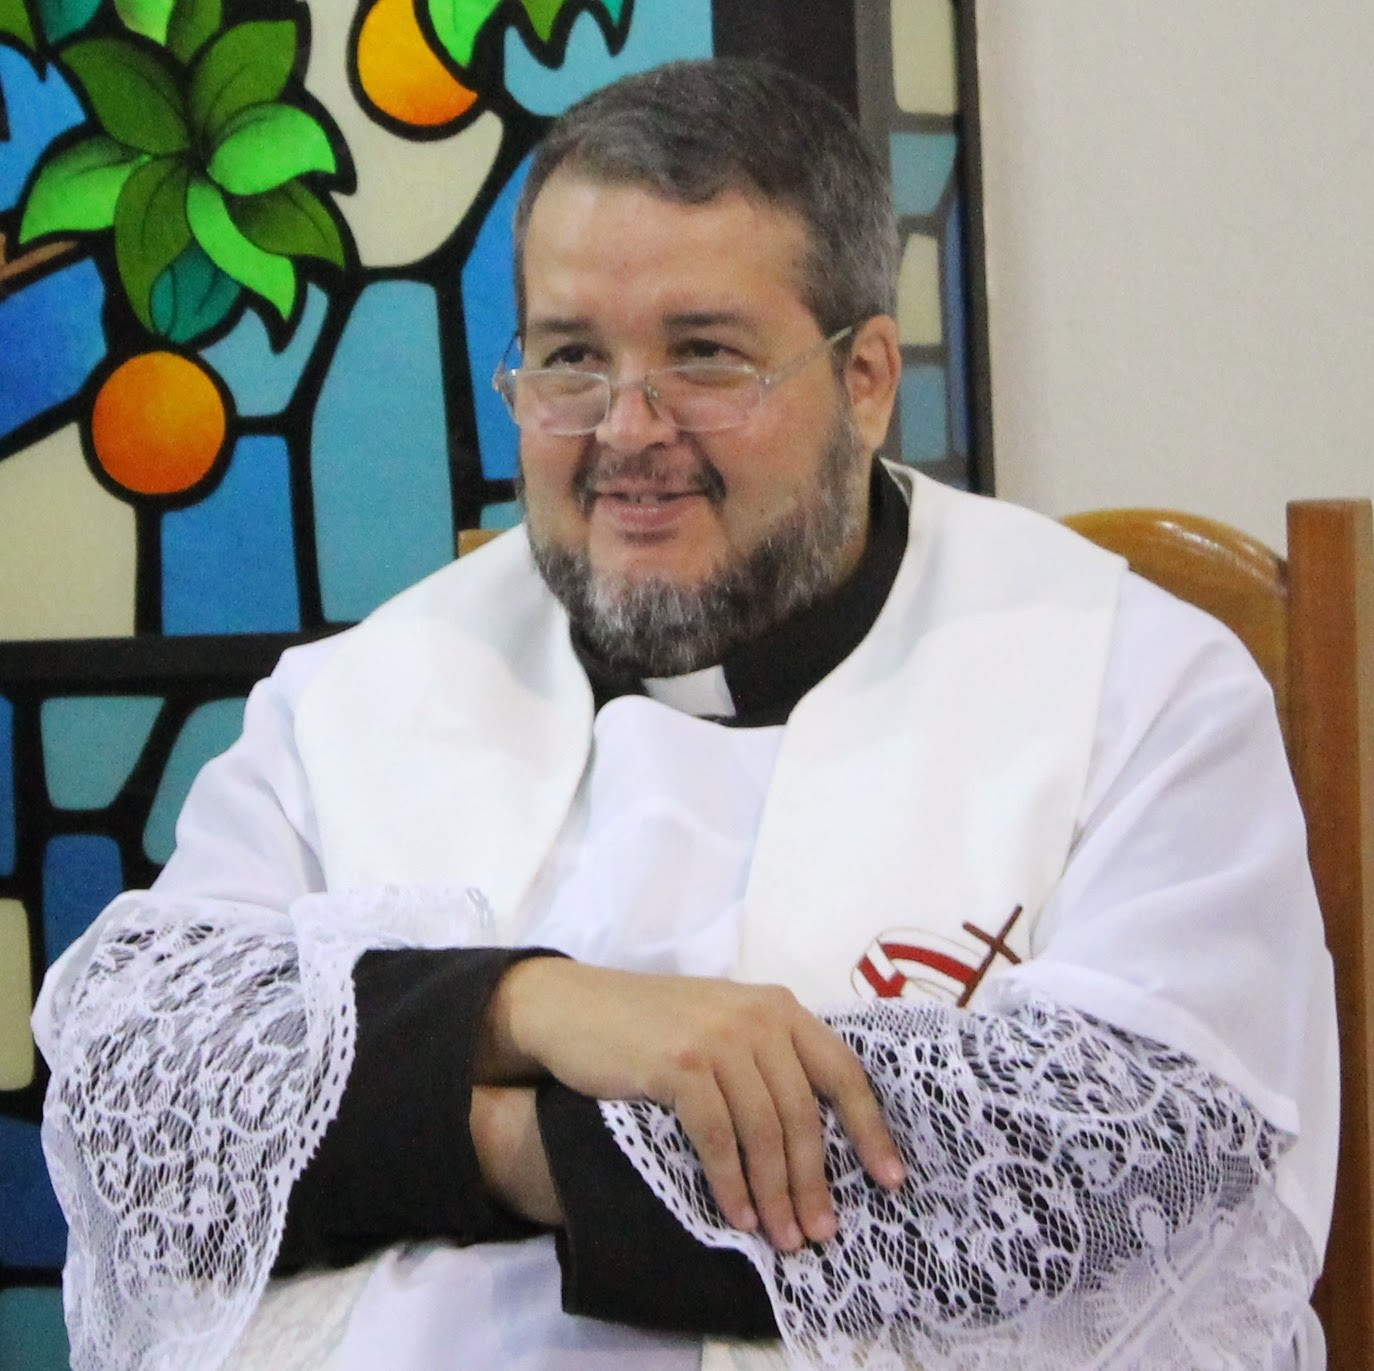 Descontentes com o padre, conselheiros do São Vicente vão reclamar com o bispo